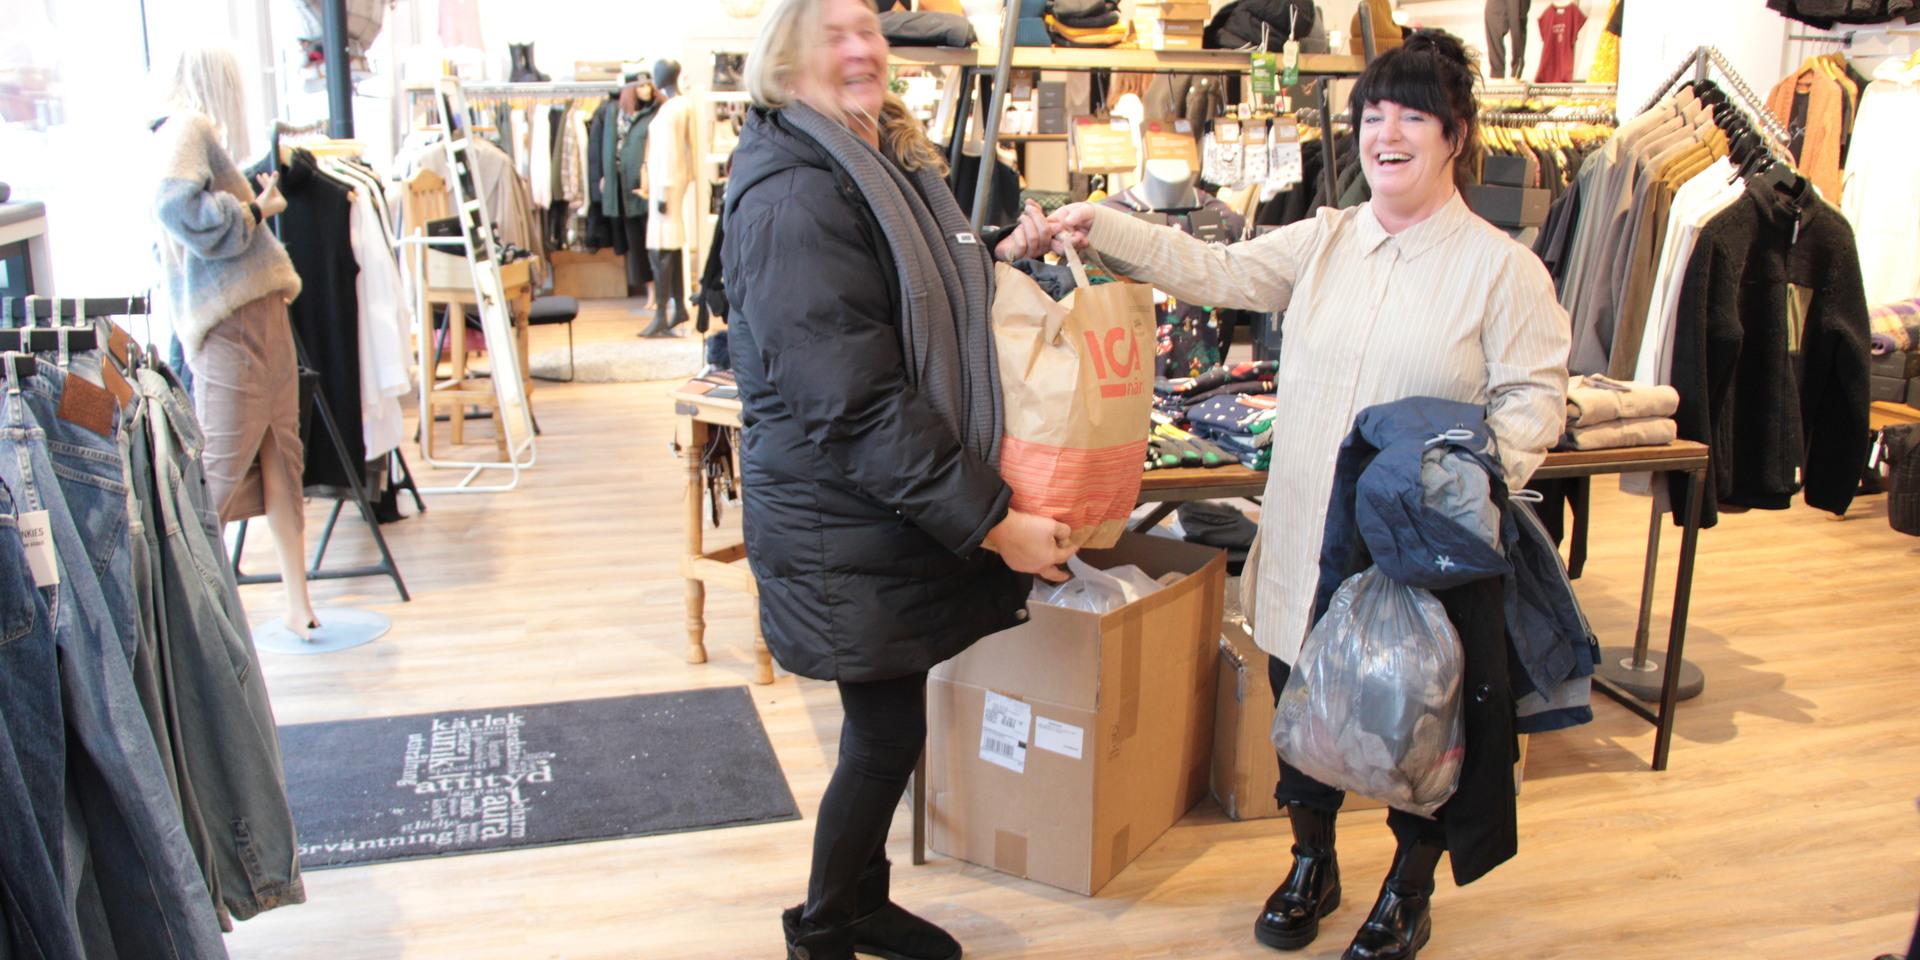 Klädbutiken Goopy är en av de butiker som tar emot saker till välgörenhet. Anneli Hult äger butiken och har fått in någa kassar med grejer som Susanne hämtar.